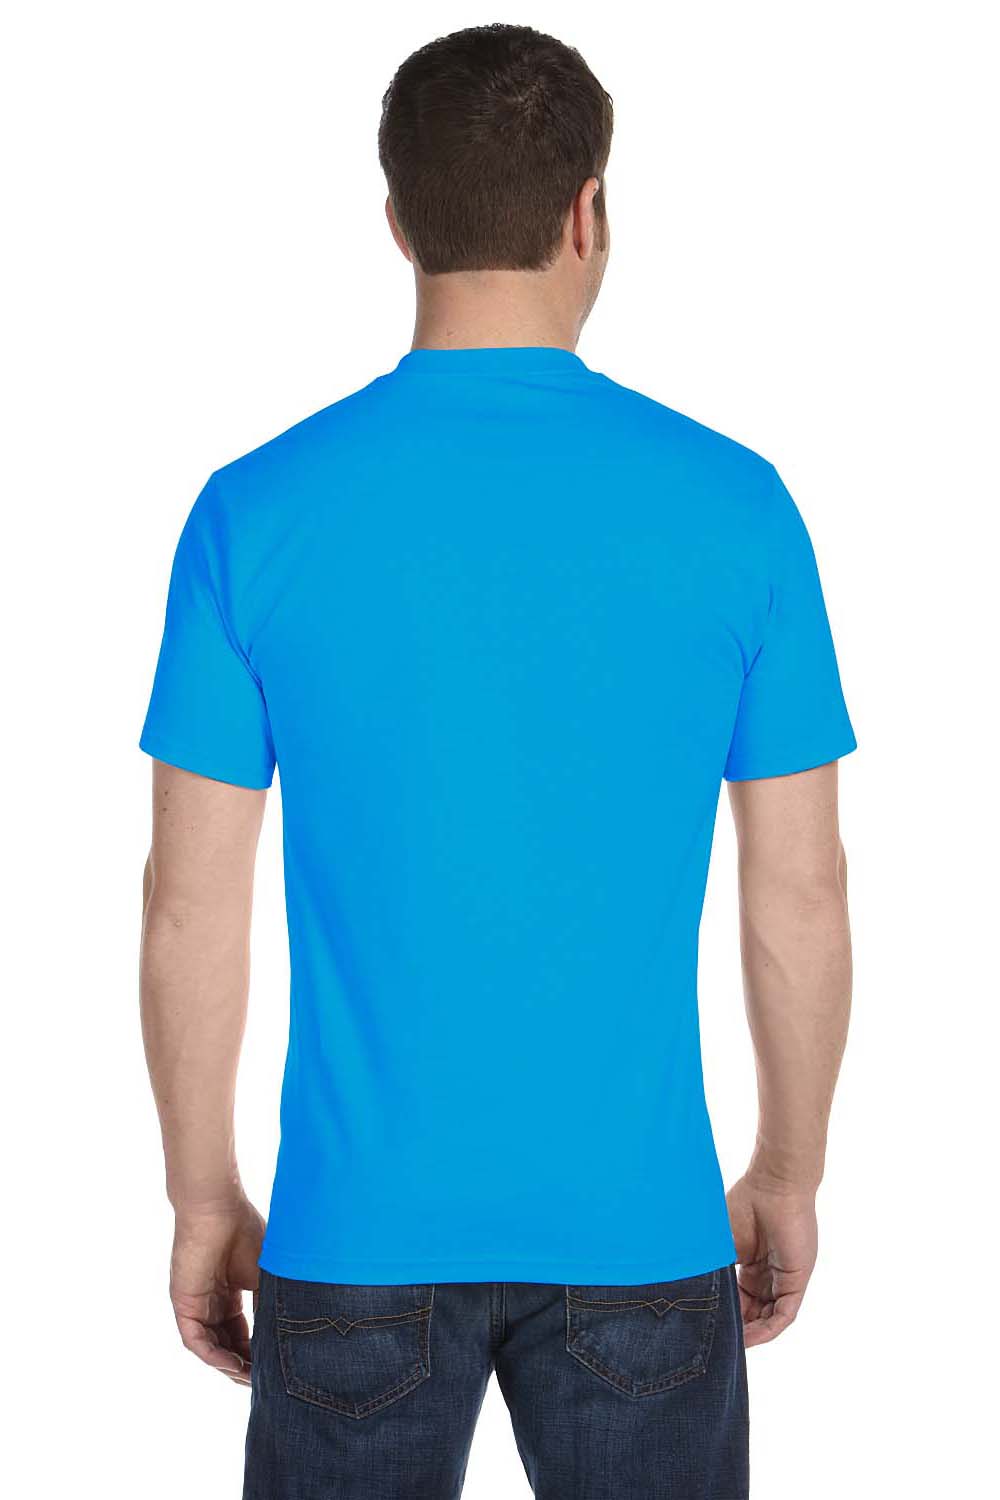 Gildan G800 Mens DryBlend Moisture Wicking Short Sleeve Crewneck T-Shirt Sapphire Blue Back